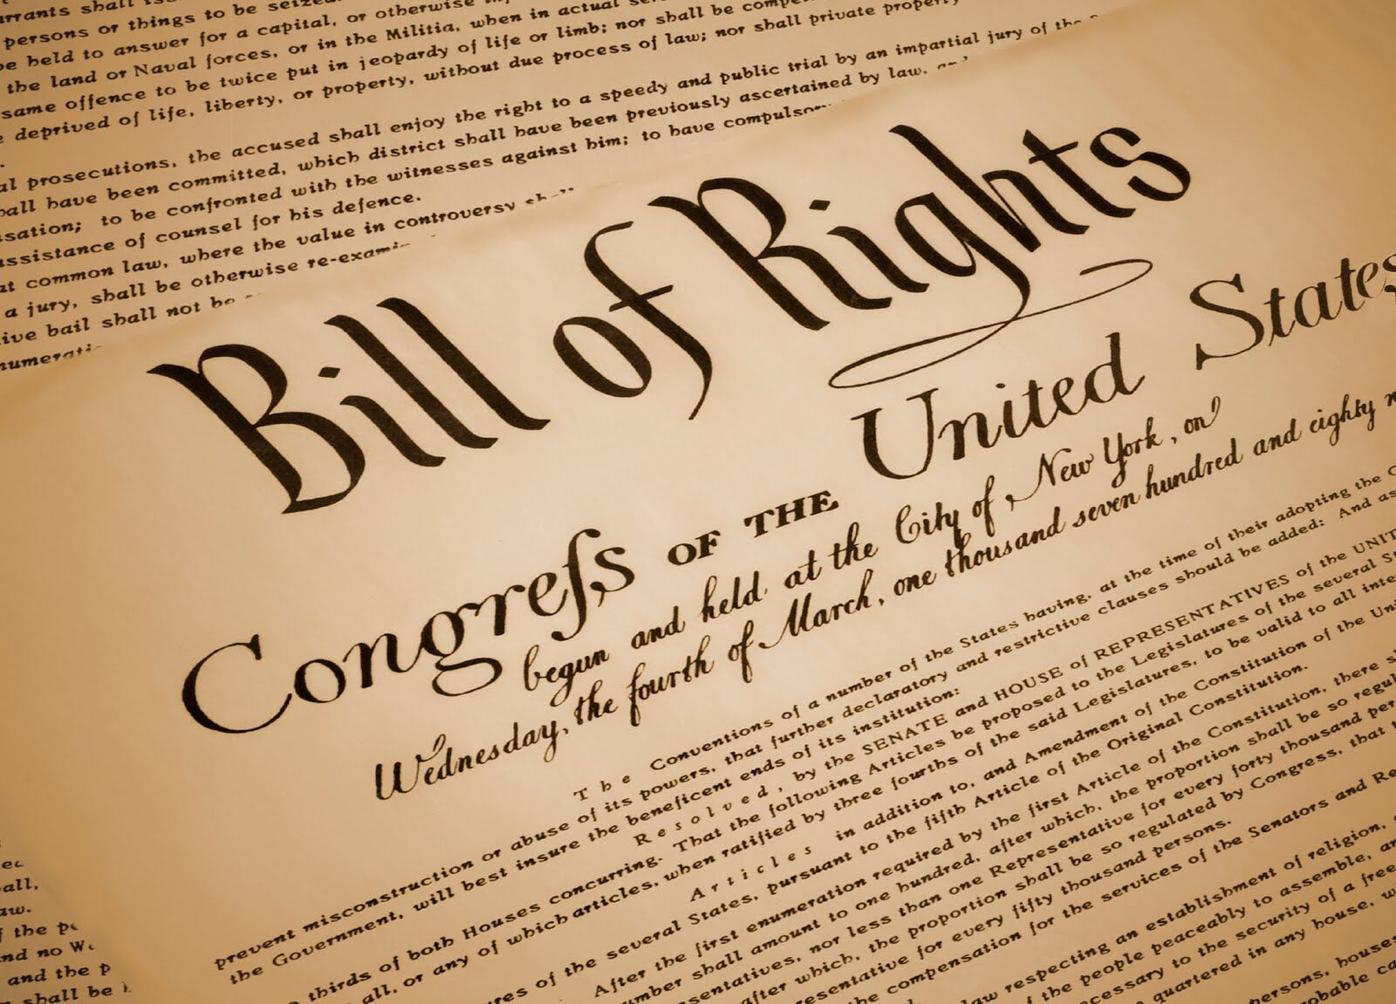 bill of rights 15th amendment